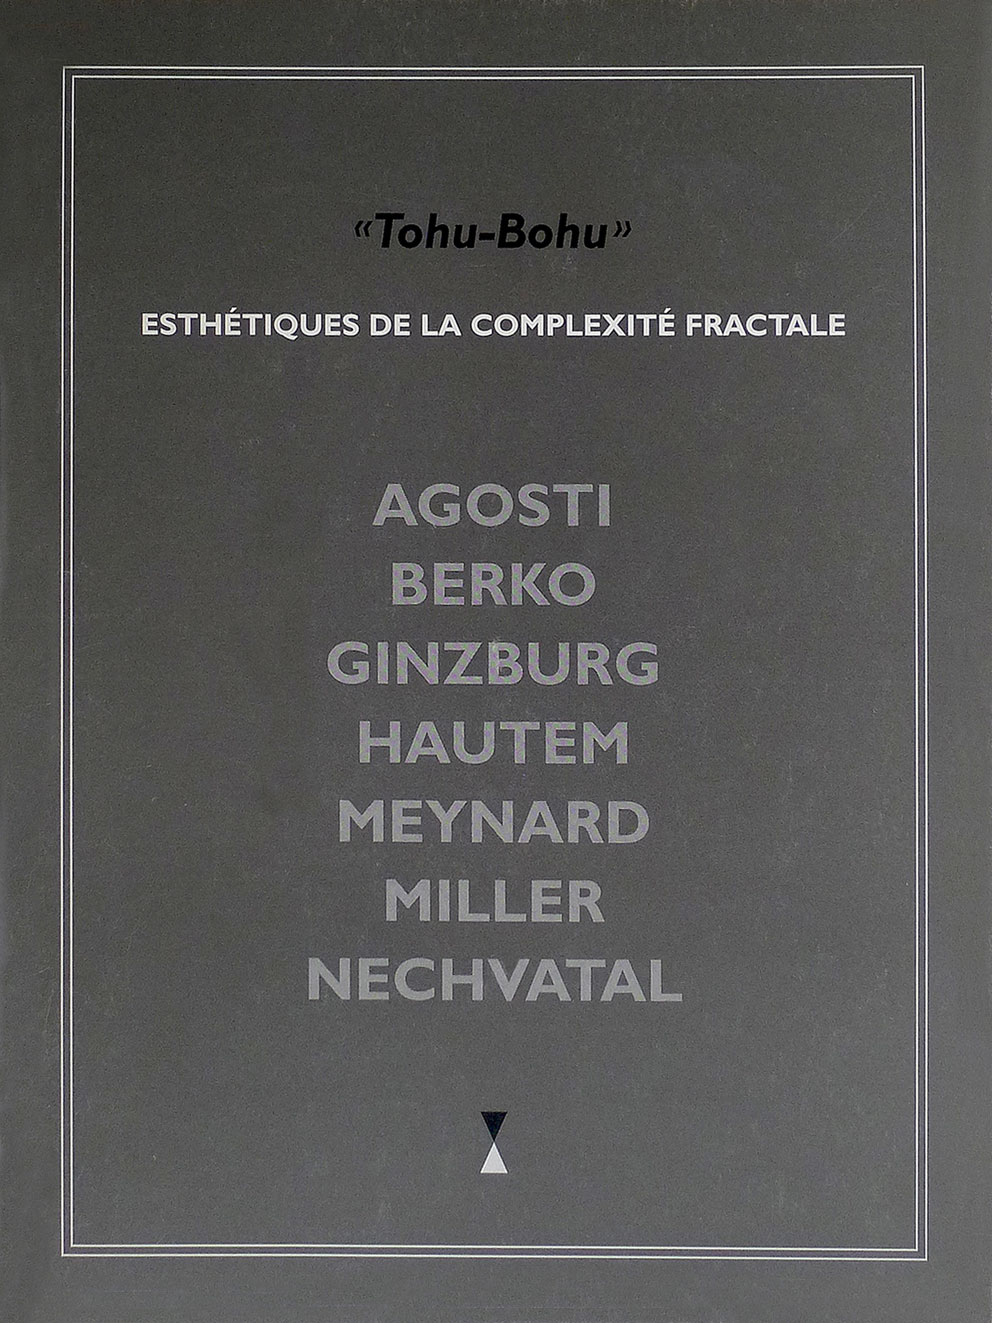 « TOHU-BOHU » Esthétiques de la Complexité Fractale